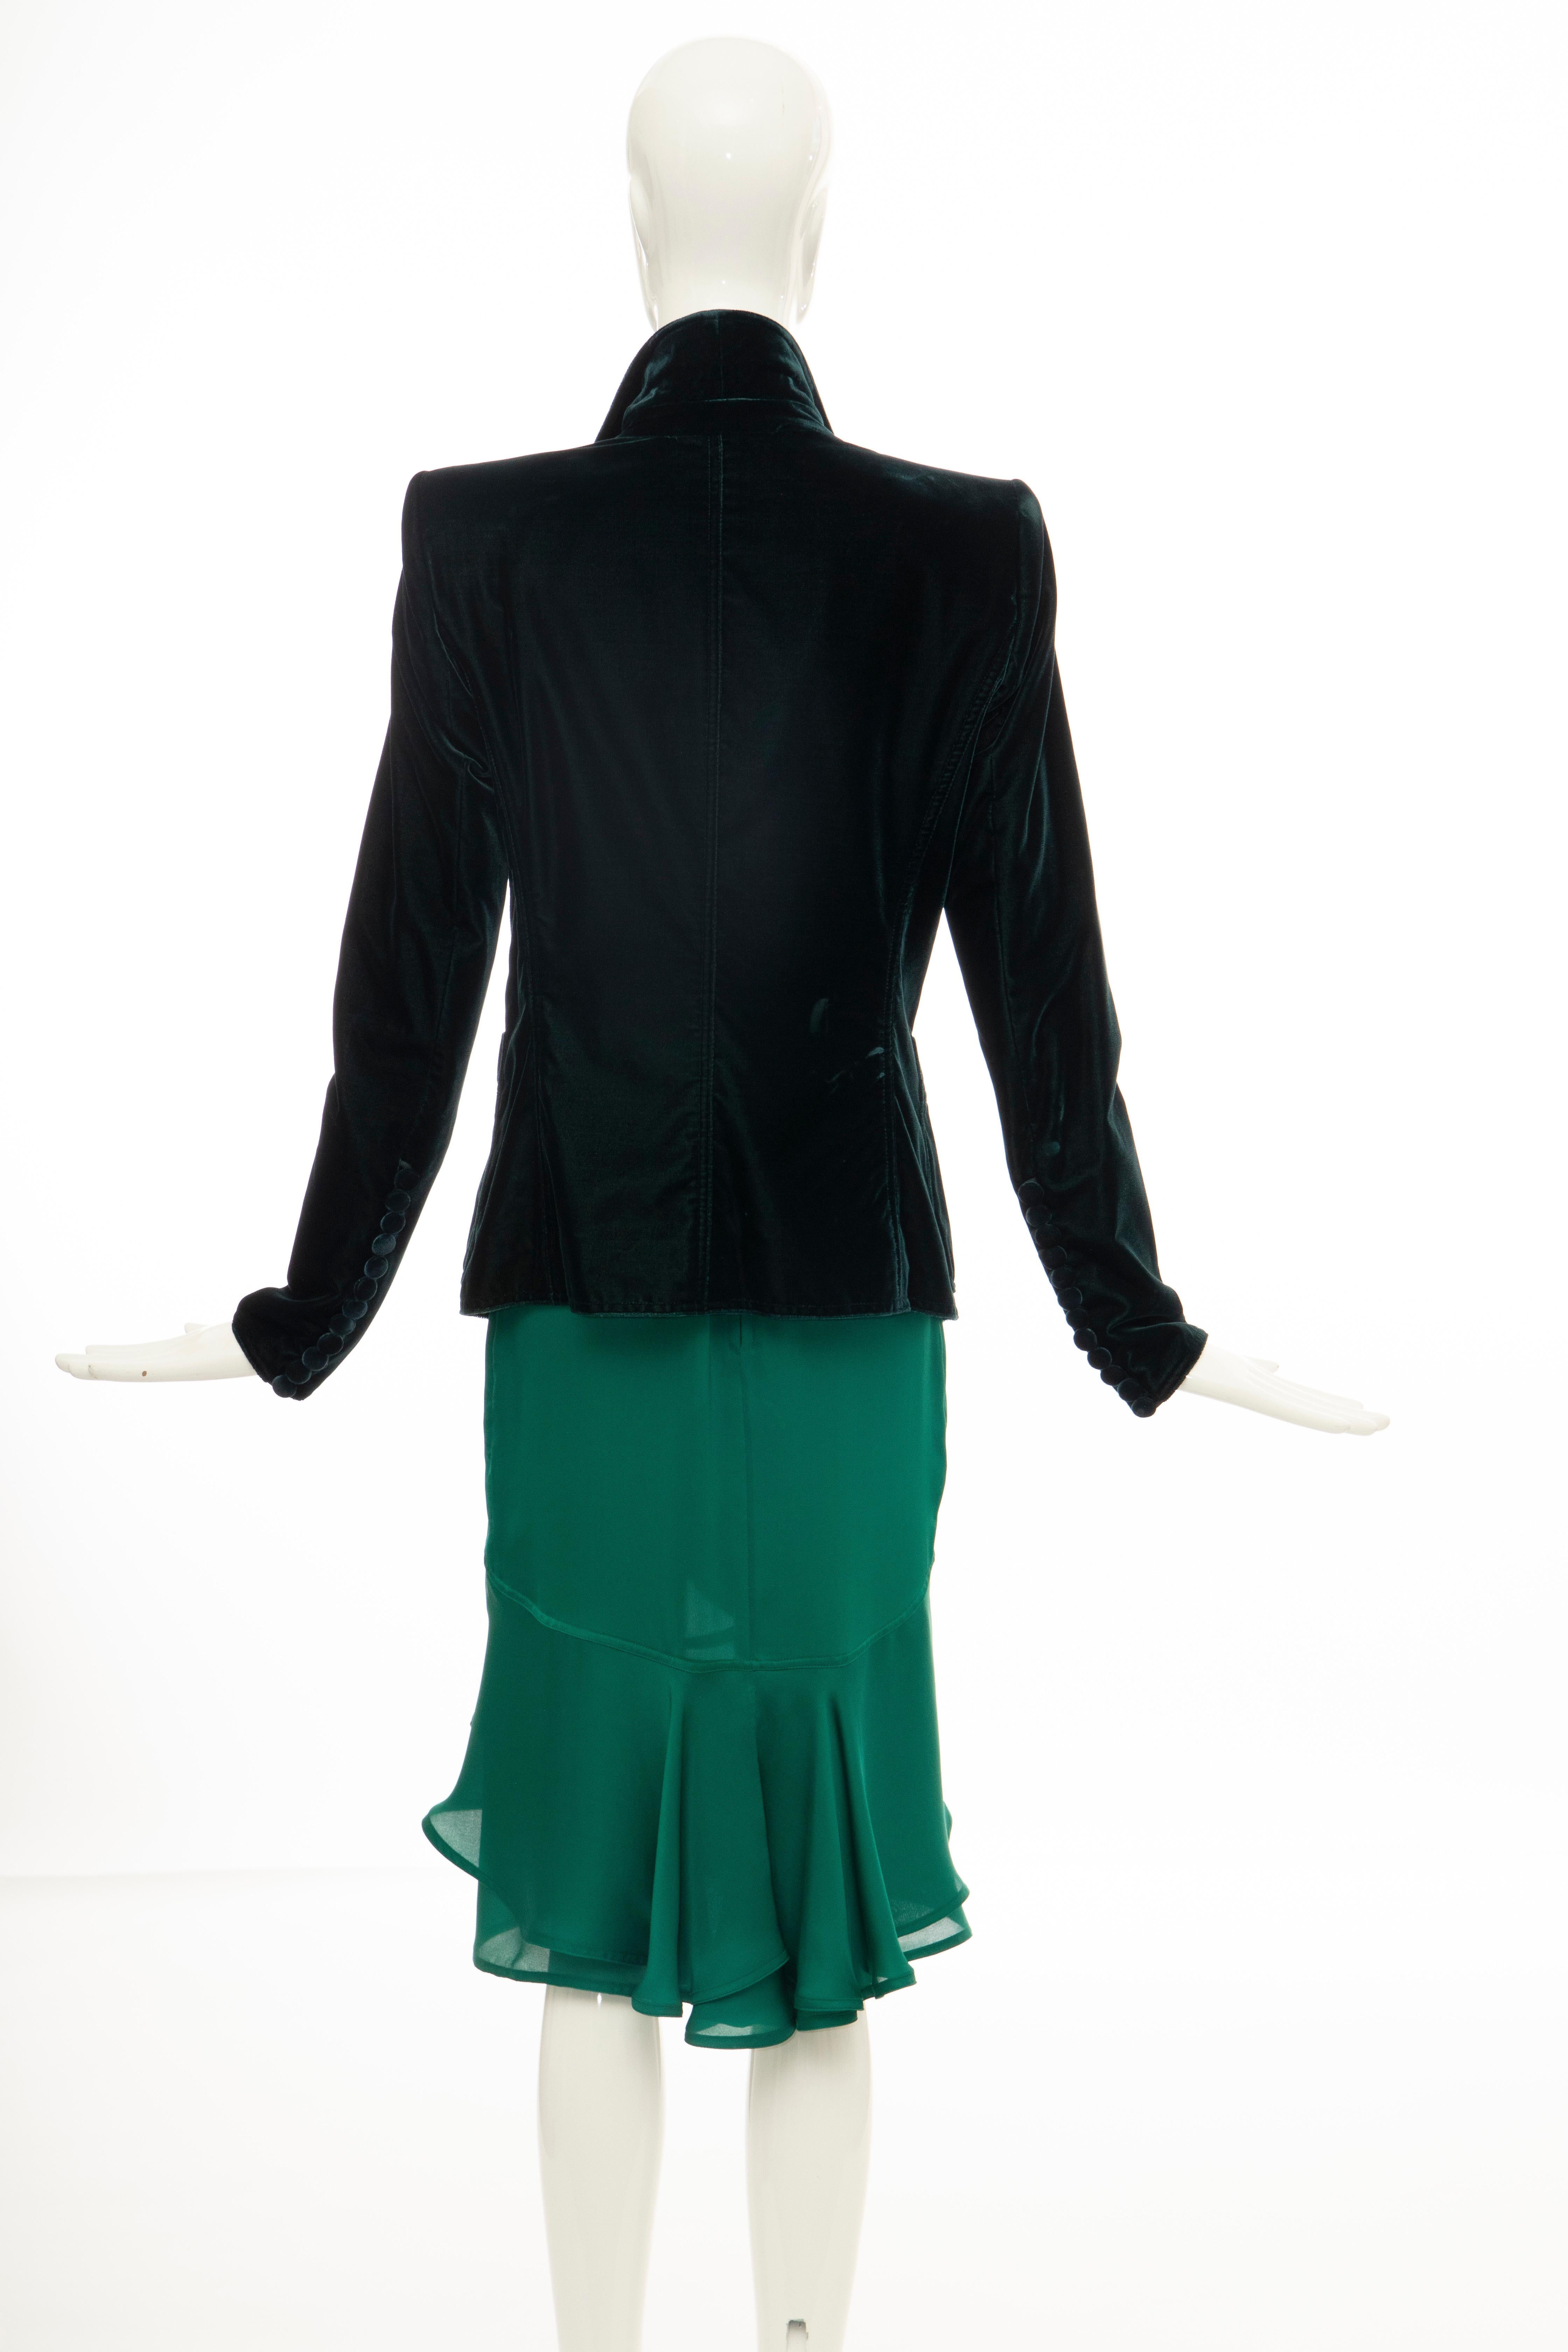 Women's Tom Ford for Yves Saint Laurent Emerald Green Velvet Silk Dress Suit,  Fall 2003